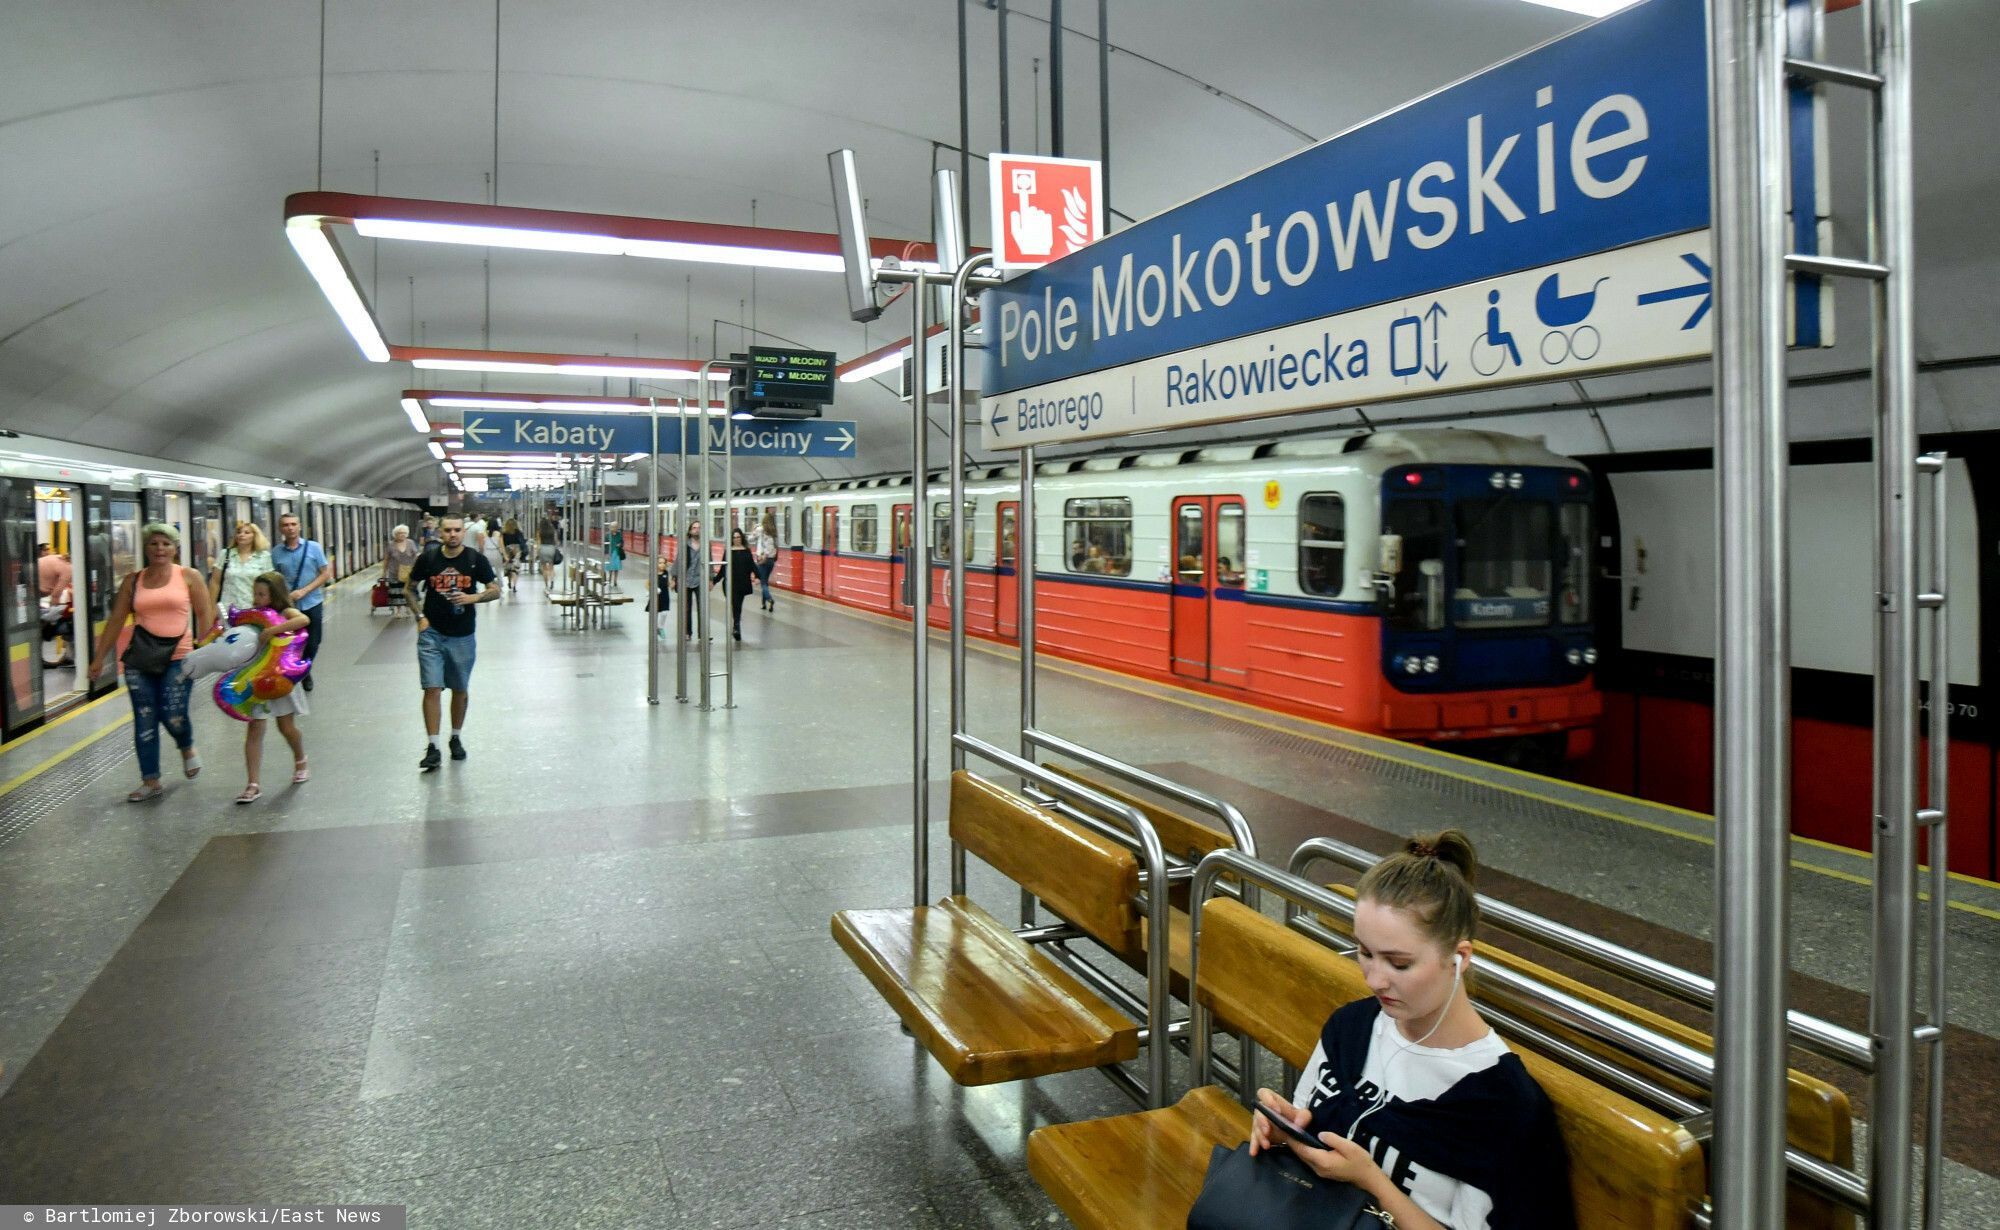 Warszawa: ewakuacja na stacji metro Pole Mokotowskie, pojawił się dym